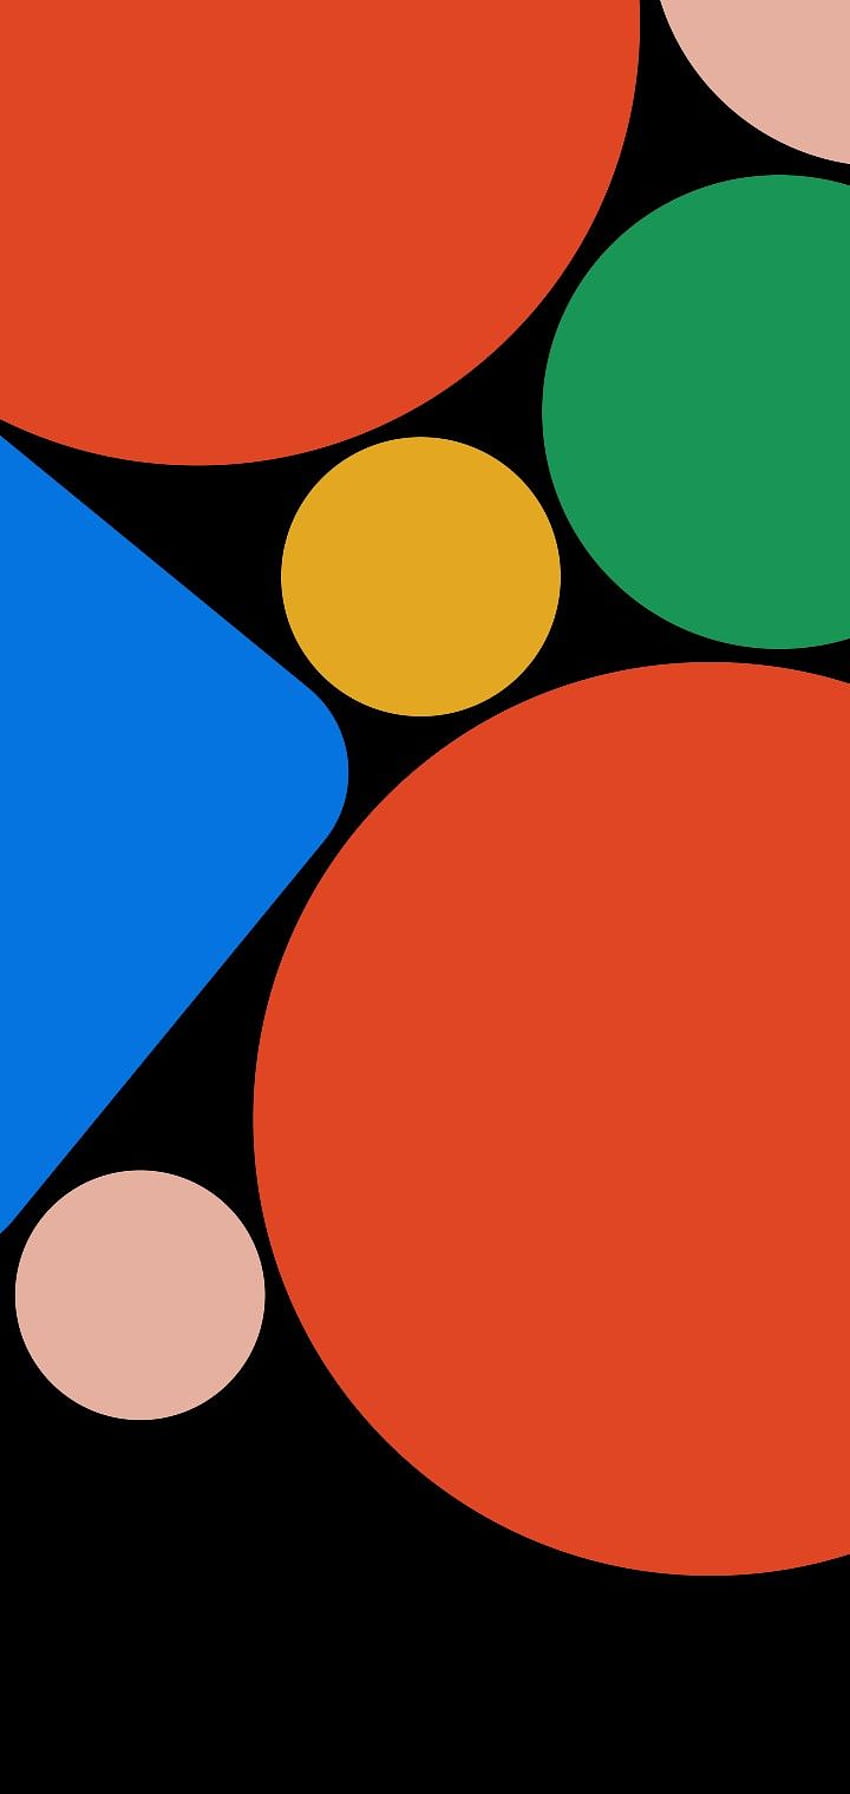 Mời tải về ảnh nền mặc định của Google Pixel